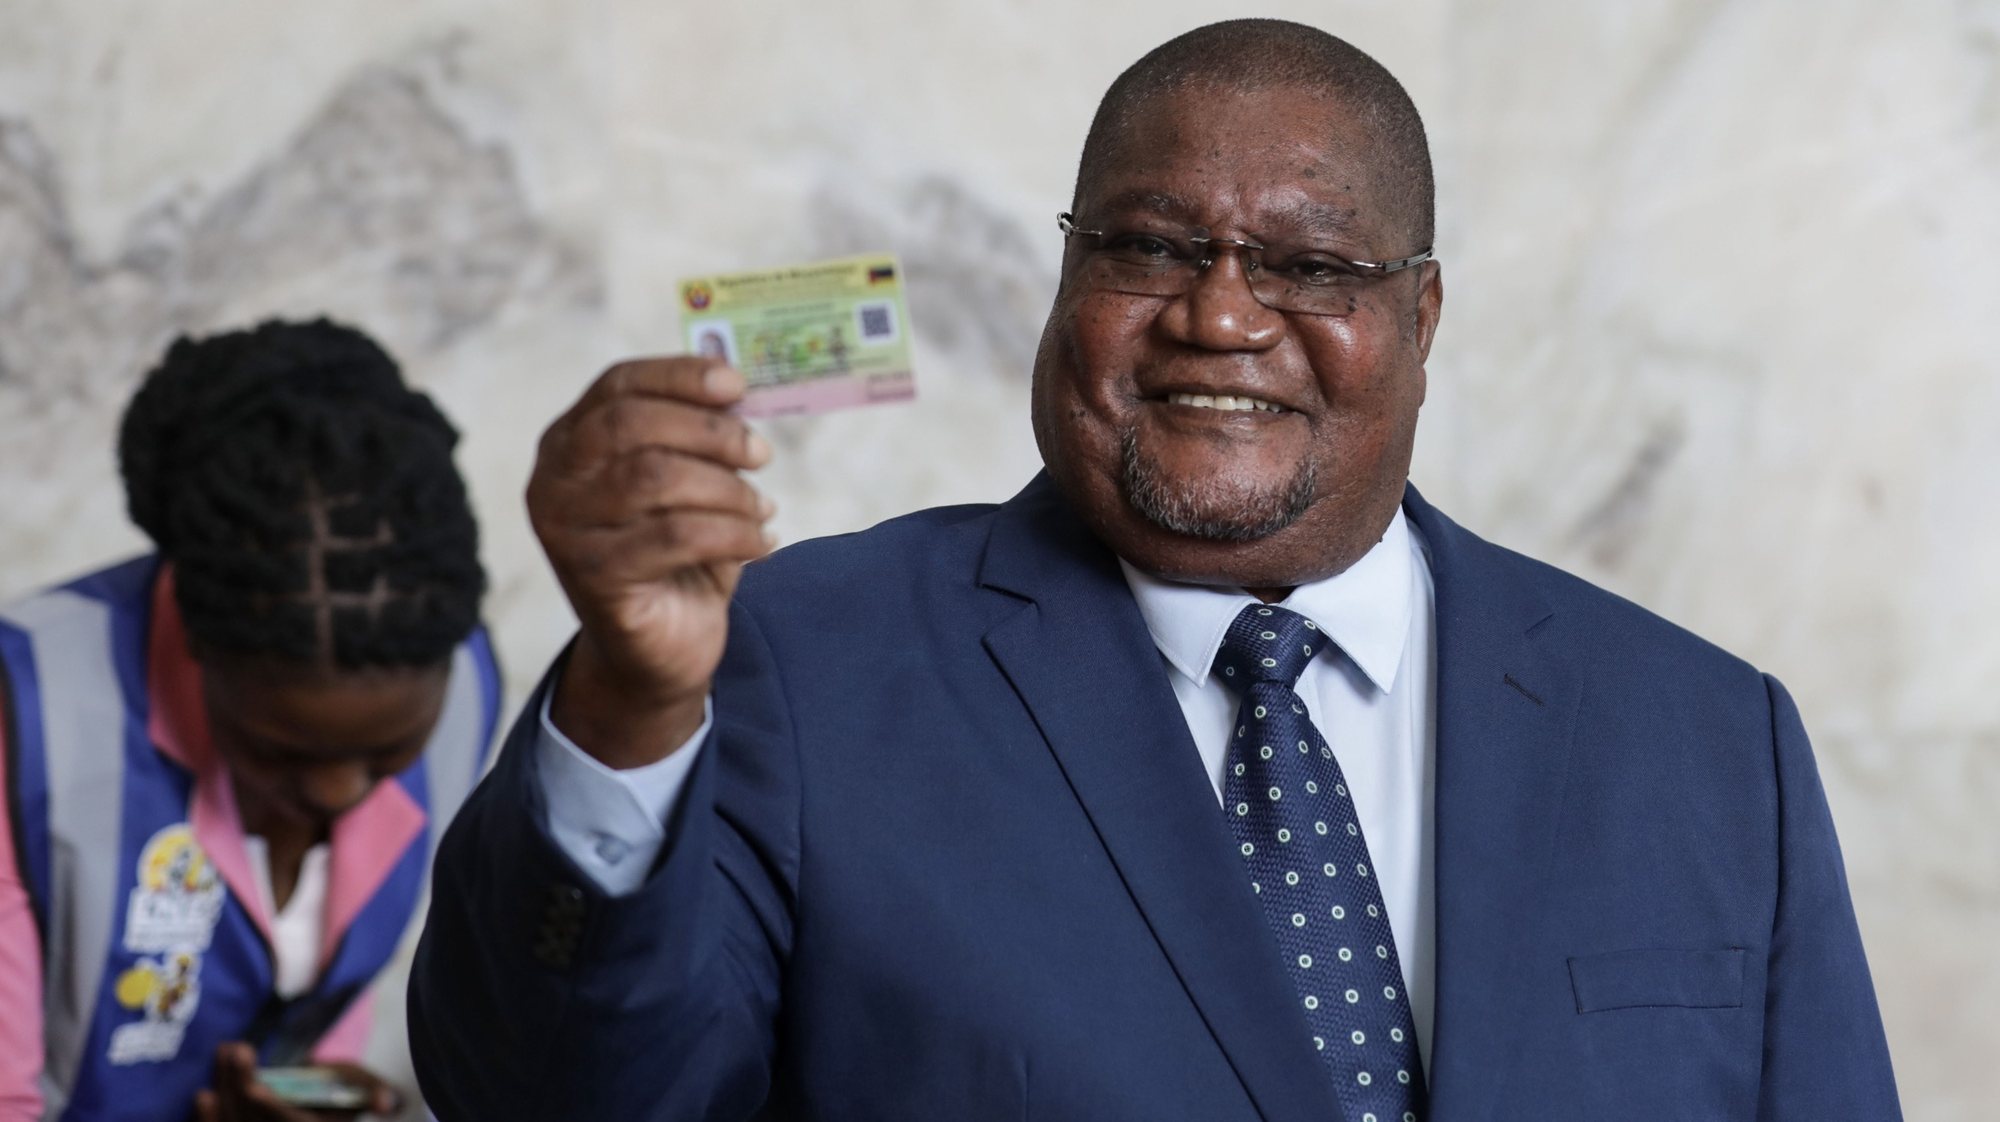 O presidente da Resistência Nacional Moçambicana (Renamo), Ossufo Momade, exibe o seu cartão de eleitor após ter-se recenseado em Maputo, Moçambique, 20 de abril de 2023. O recenseamento para as eleições autárquicas de 11 de outubro em Moçambique arrancou hoje nos 65 distritos com autarquias, com uma previsão de registo de quase 10 milhões de eleitores, de acordo com dados oficias. LUÍSA NHANTUMBO/LUSA